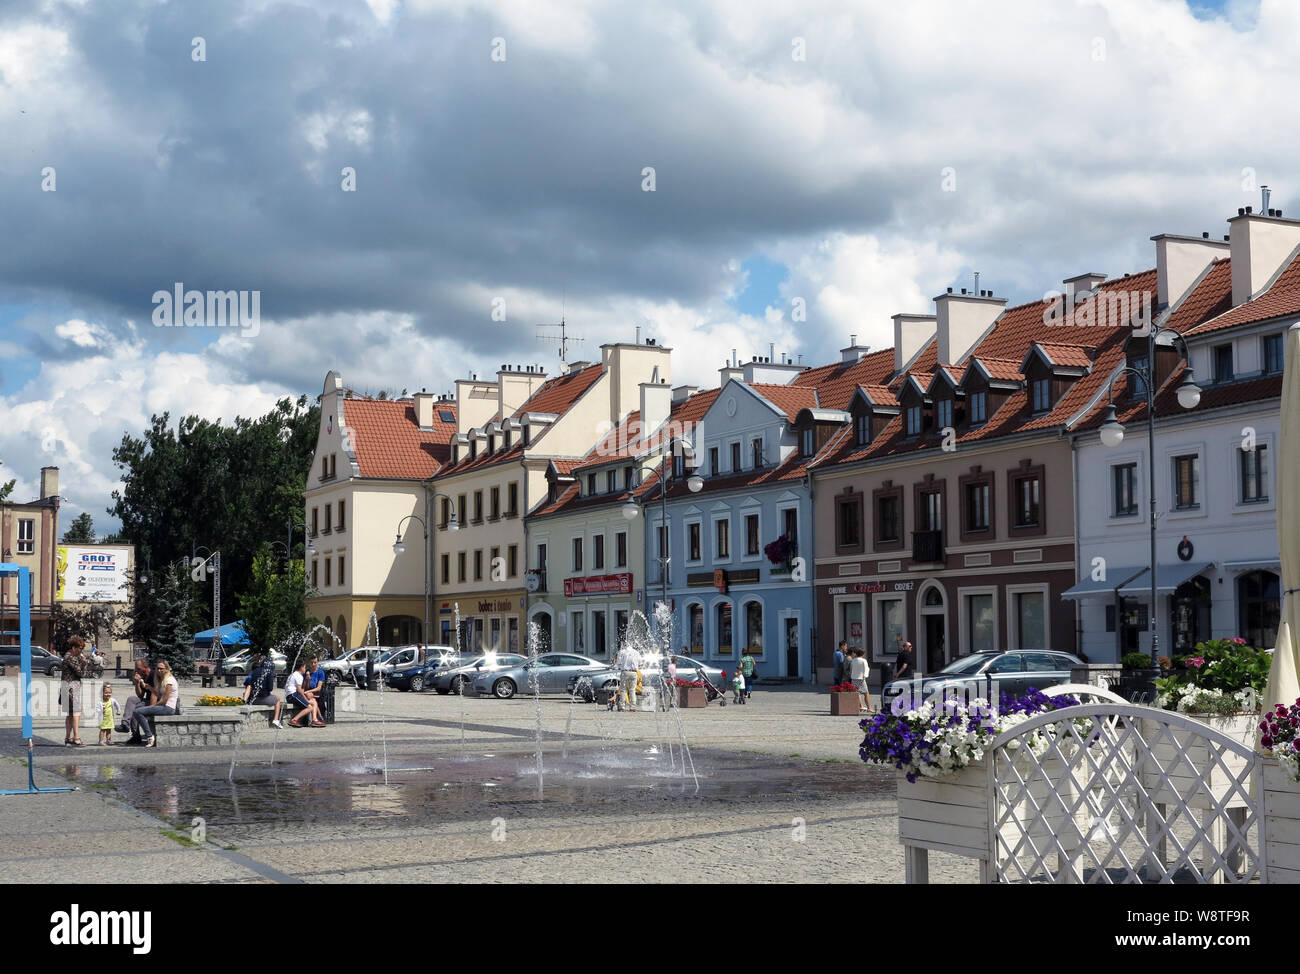 Maisons de la civile restauré avant-guerre au marché de Katowice (Pologne) dans le Johannisburg La Mazurie (ancienne Prusse orientale), enregistrés sur l'utilisation dans le monde entier 14.07.2019 | Banque D'Images